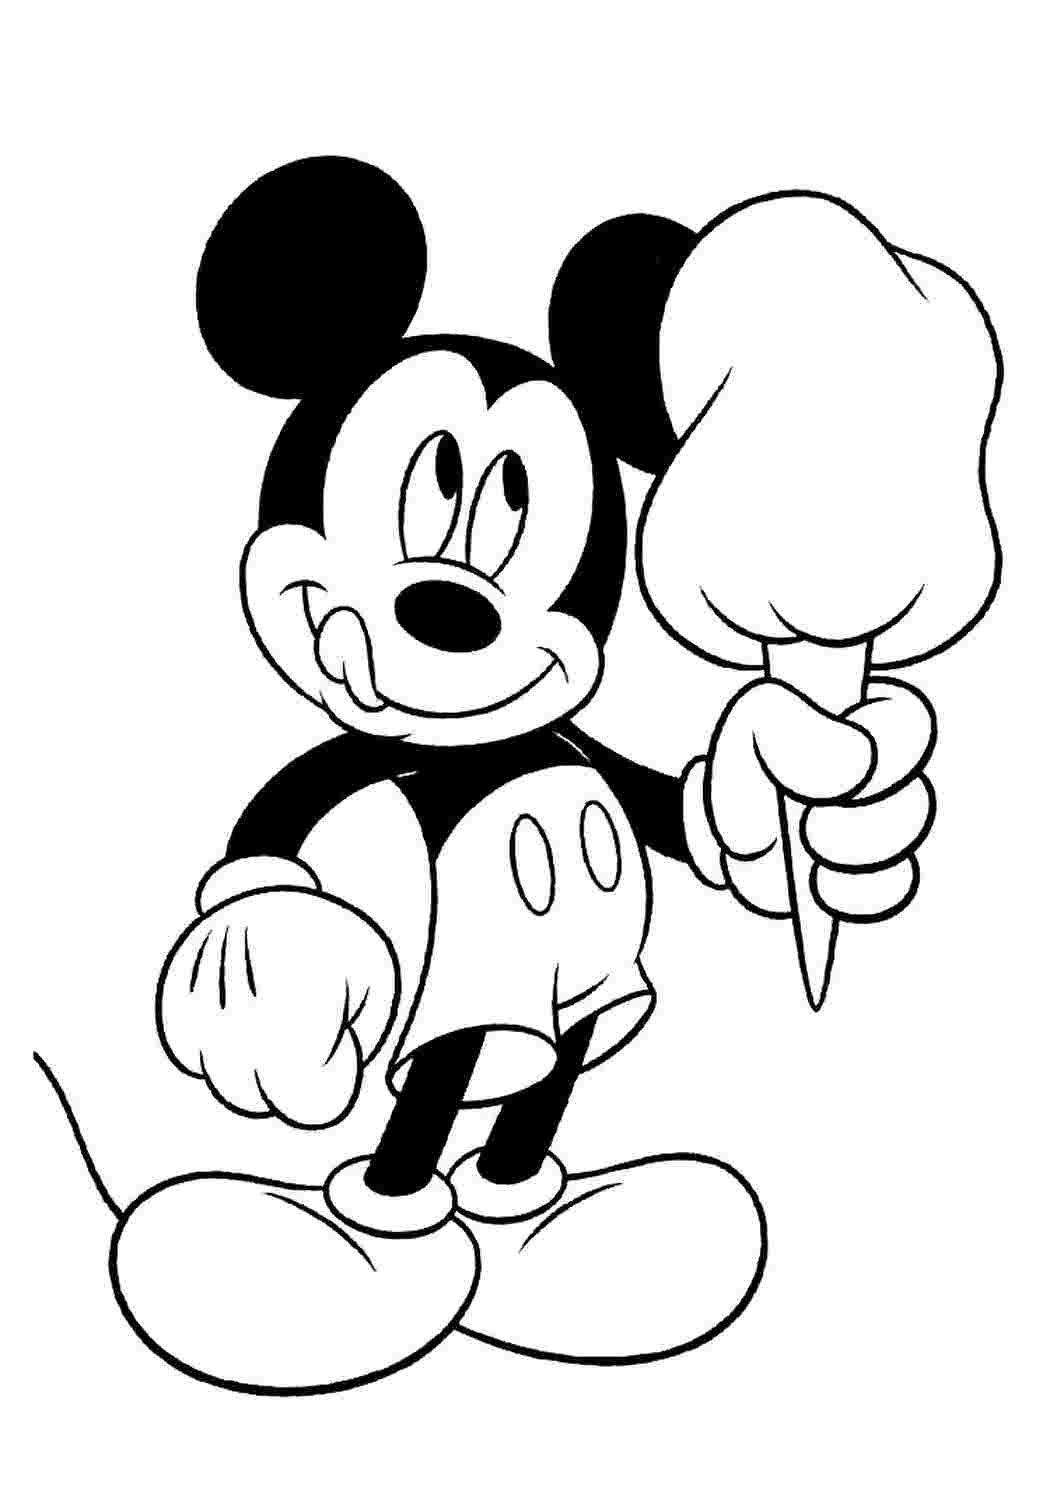 Раскраски героев диснеевских мультиков: Микки Маус (Mickey Mouse) скачать